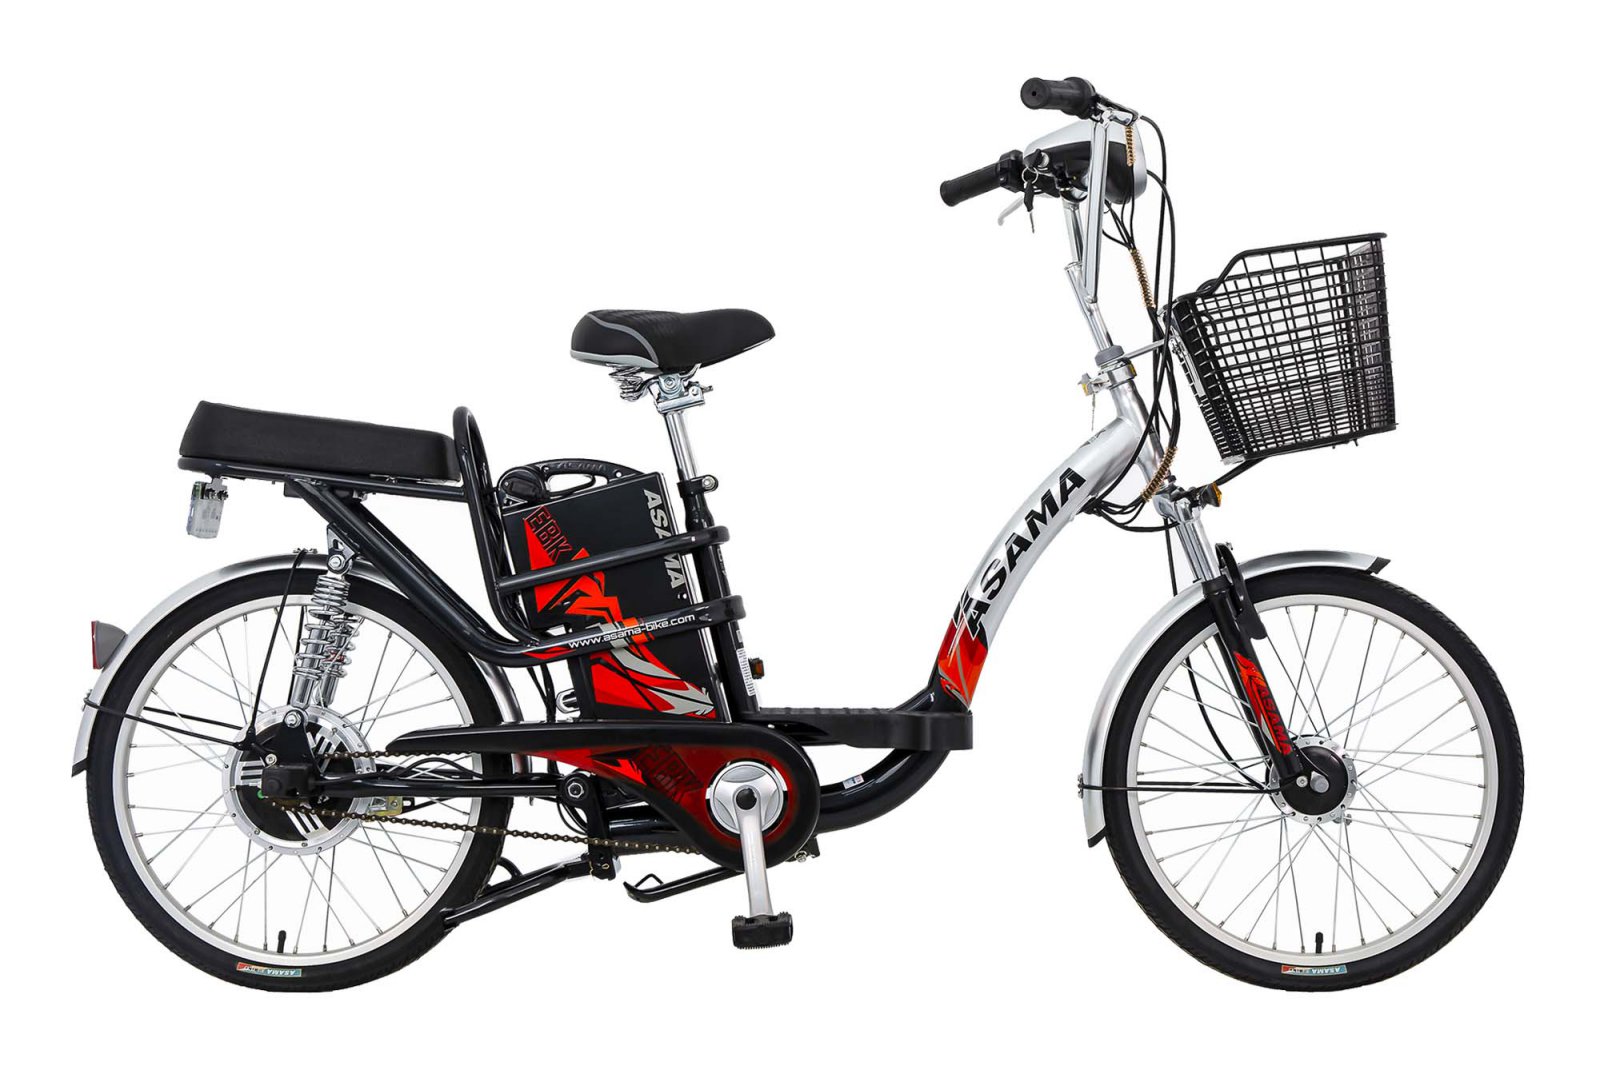 TGDĐ cởi cửa hàng cung cấp xe đạp điện Đủ chuyên mục và kiểu dáng đợi chúng ta lựa chọn